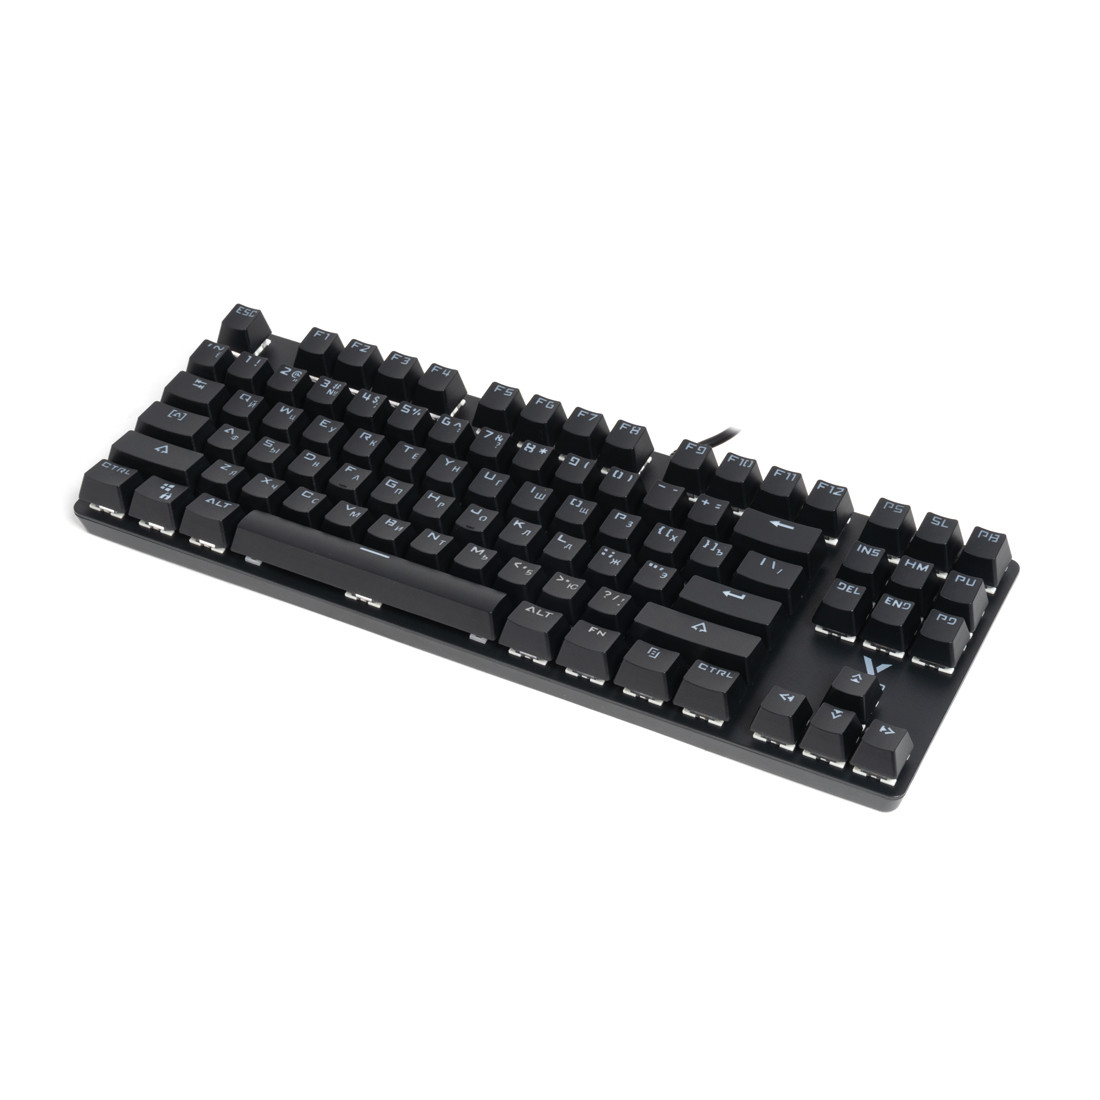 Игровая клавиатура механическая, алюминиевый корпус, Rapoo V500 Alloy